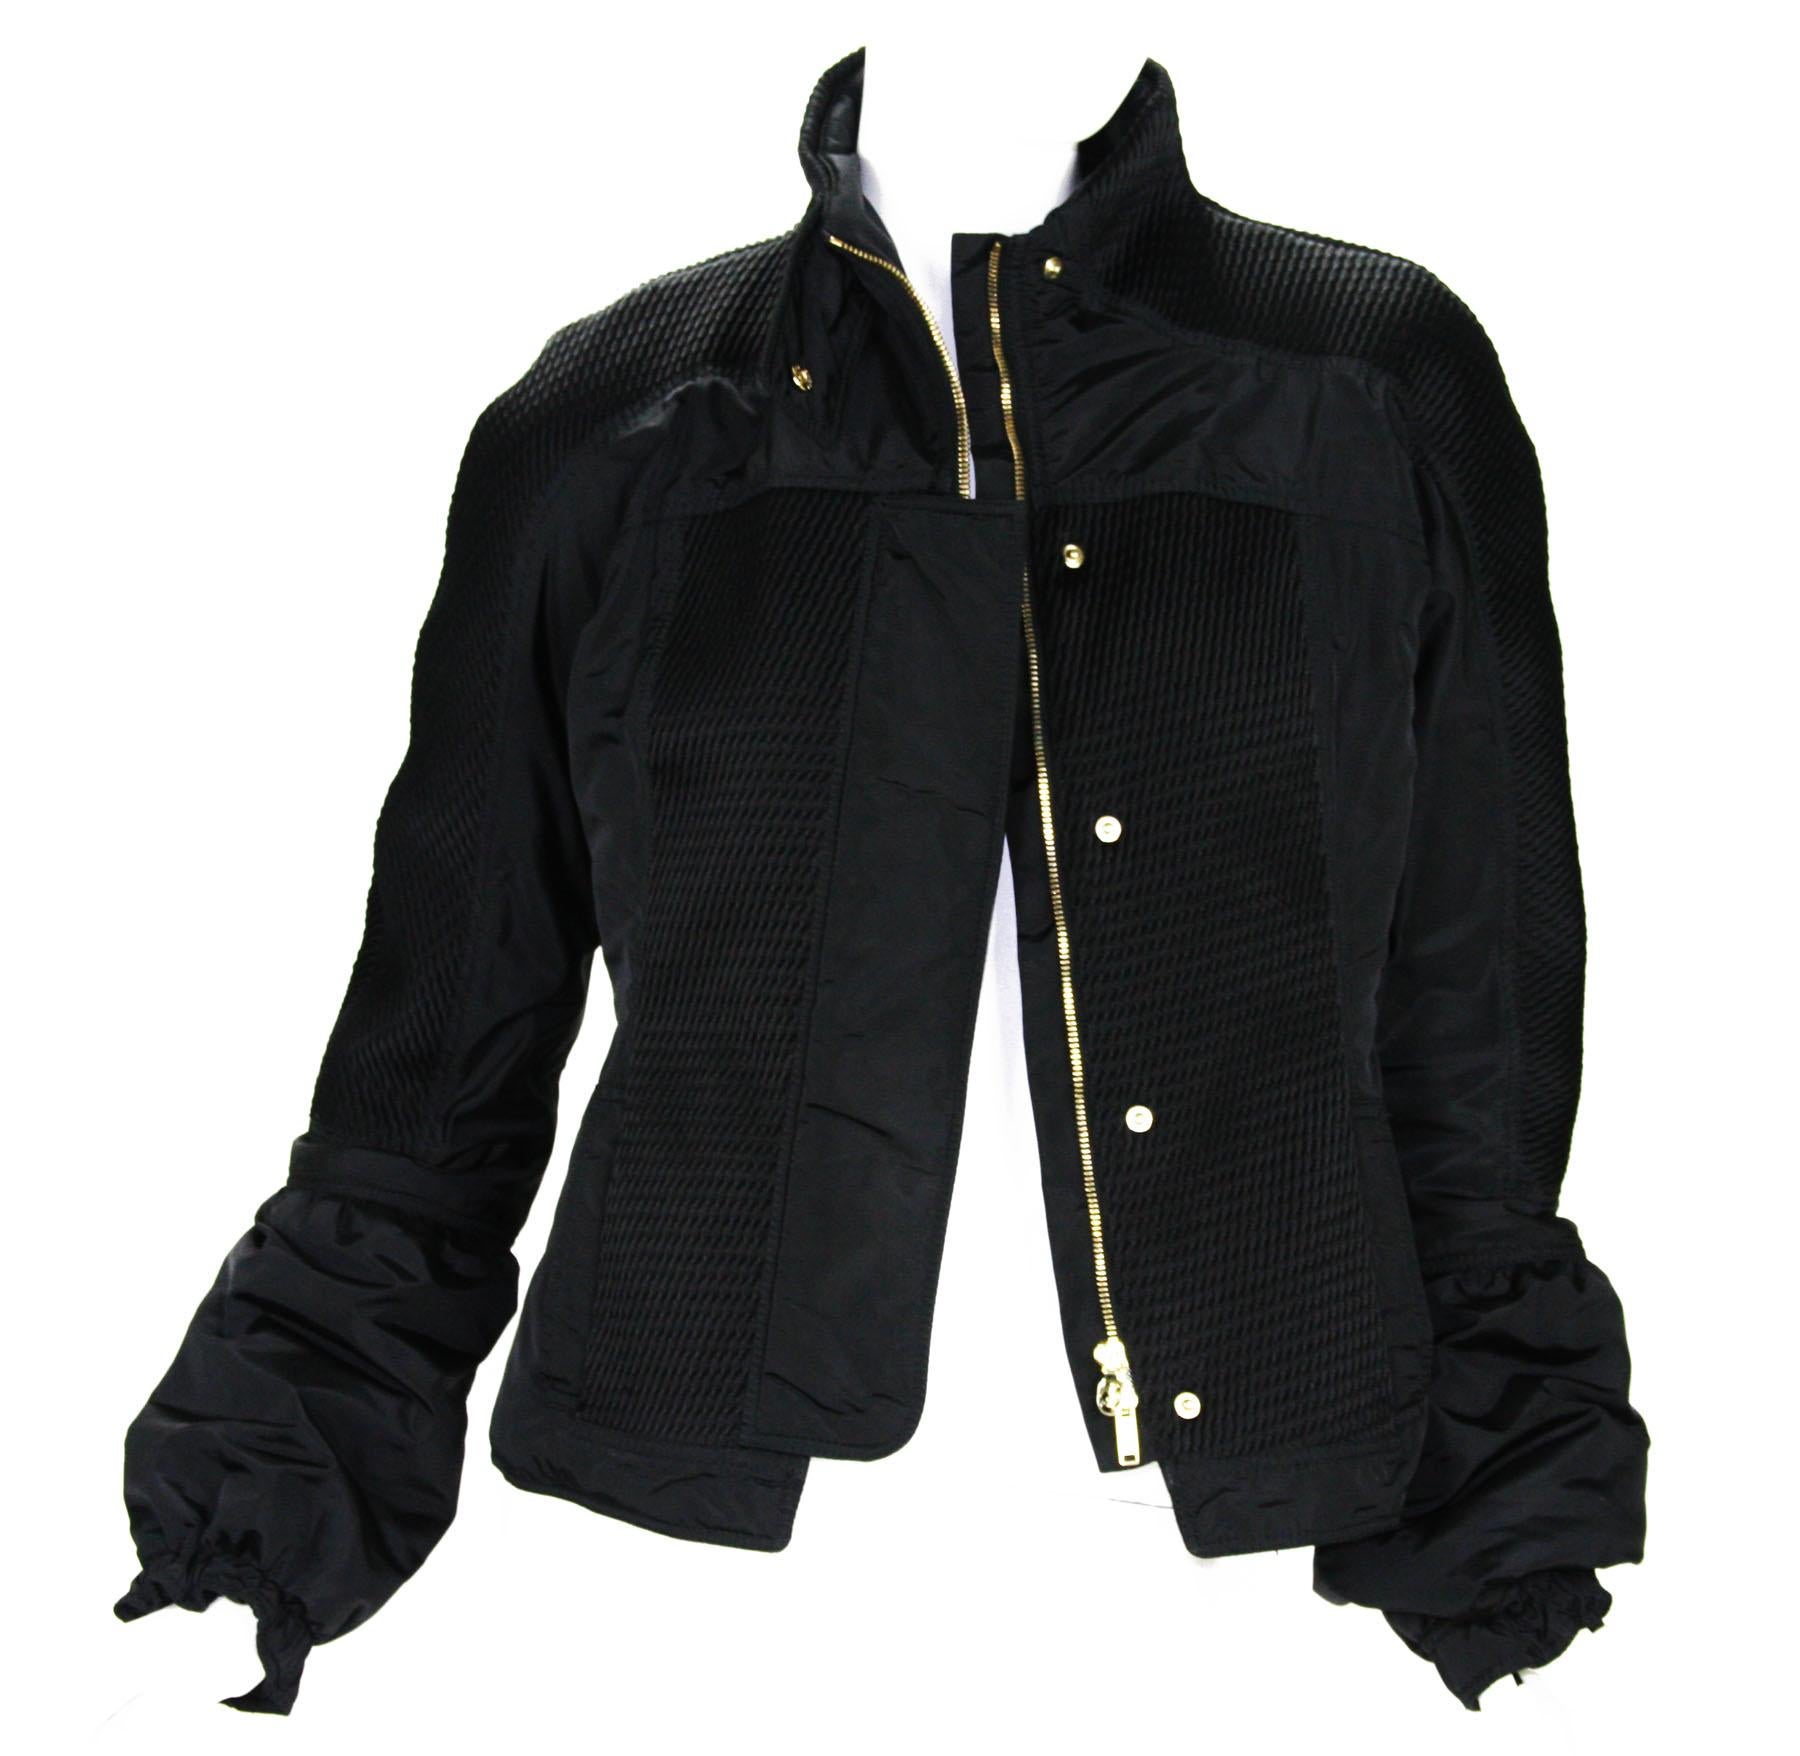 Tom Ford für Gucci Schwarze warme Nylonjacke
F/W 2004 Collection'S
Designer Größe 44
Jacke für die kalte Jahreszeit, verdeckter Reißverschluss und Druckknöpfe, zwei Seitentaschen, Glockenärmel mit Gummizug am Ende, zwei Seitentaschen,  Vollständig